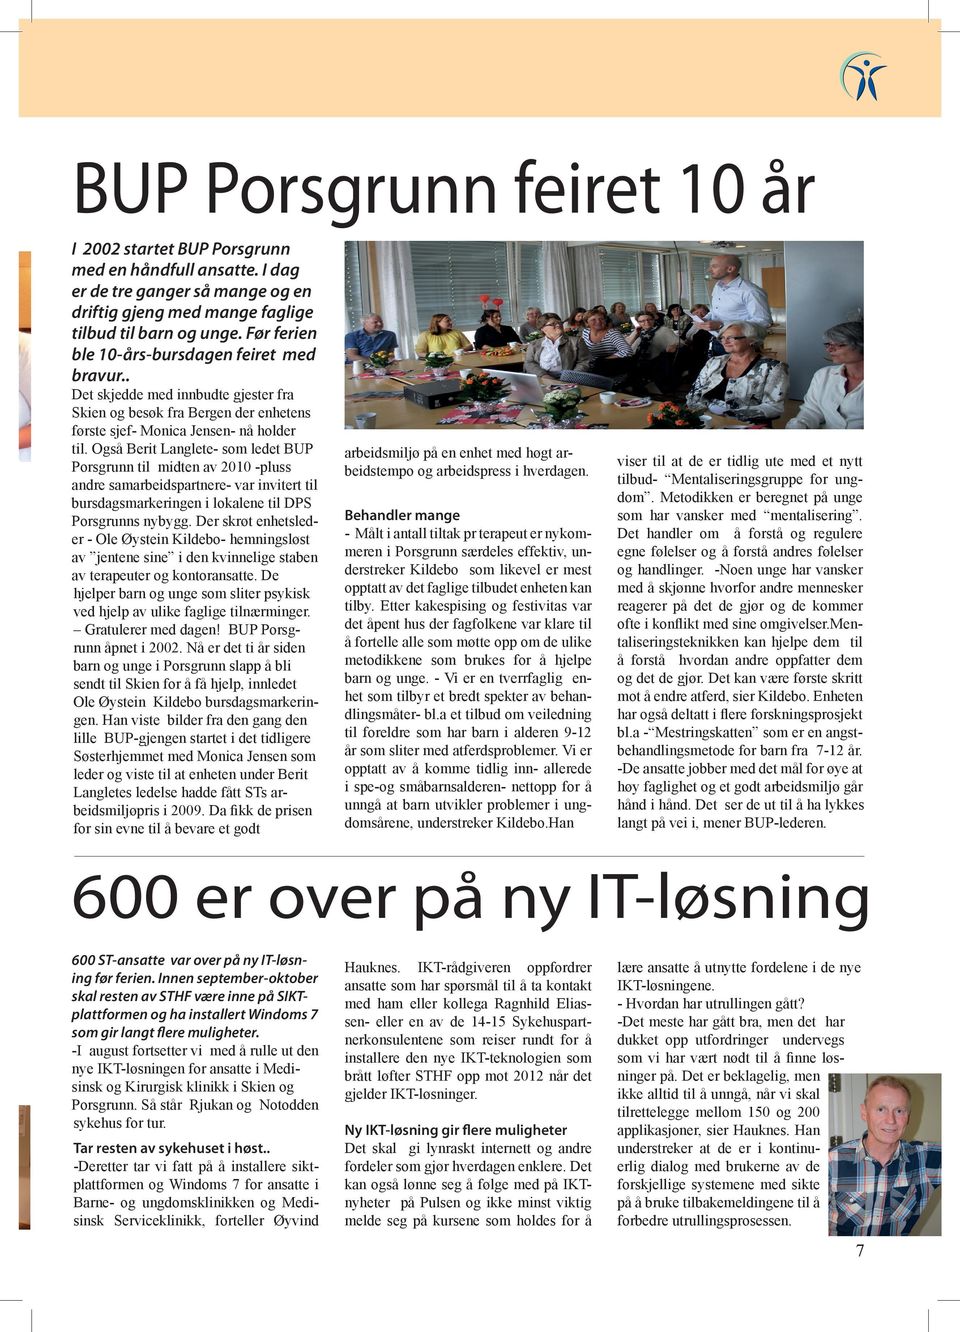 Også Berit Langlete- som ledet BUP Porsgrunn til midten av 2010 -pluss andre samarbeidspartnere- var invitert til bursdagsmarkeringen i lokalene til DPS Porsgrunns nybygg.